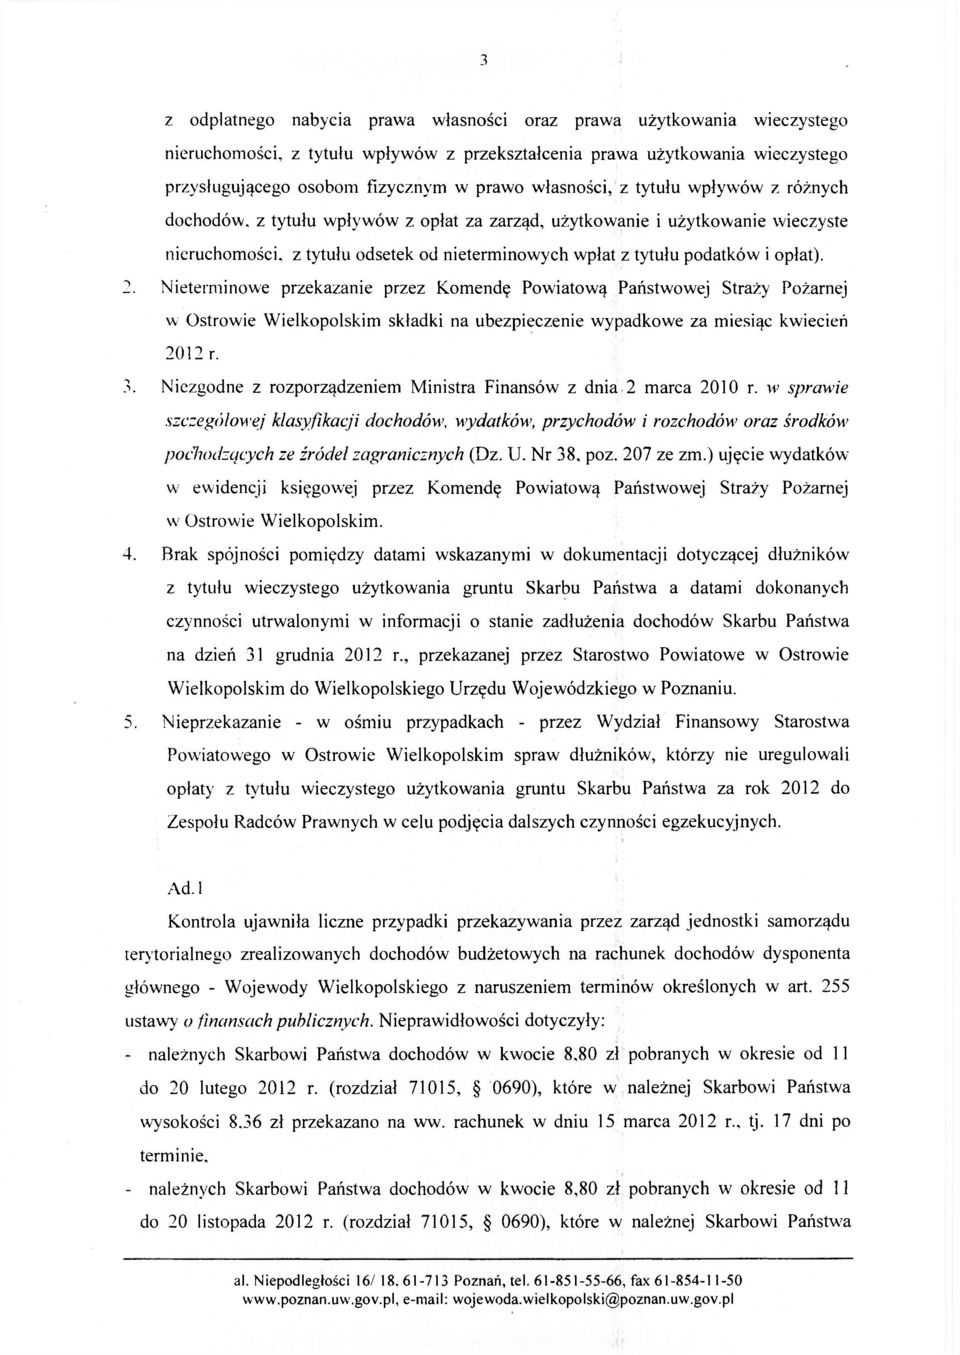 opłat). 2. Nieterminowe przekazanie przez Komendę Powiatową Państwowej Straży Pożarnej w Ostrowie Wielkopolskim składki na ubezpieczenie wypadkowe za miesiąc kwiecień 2012 r. 3.